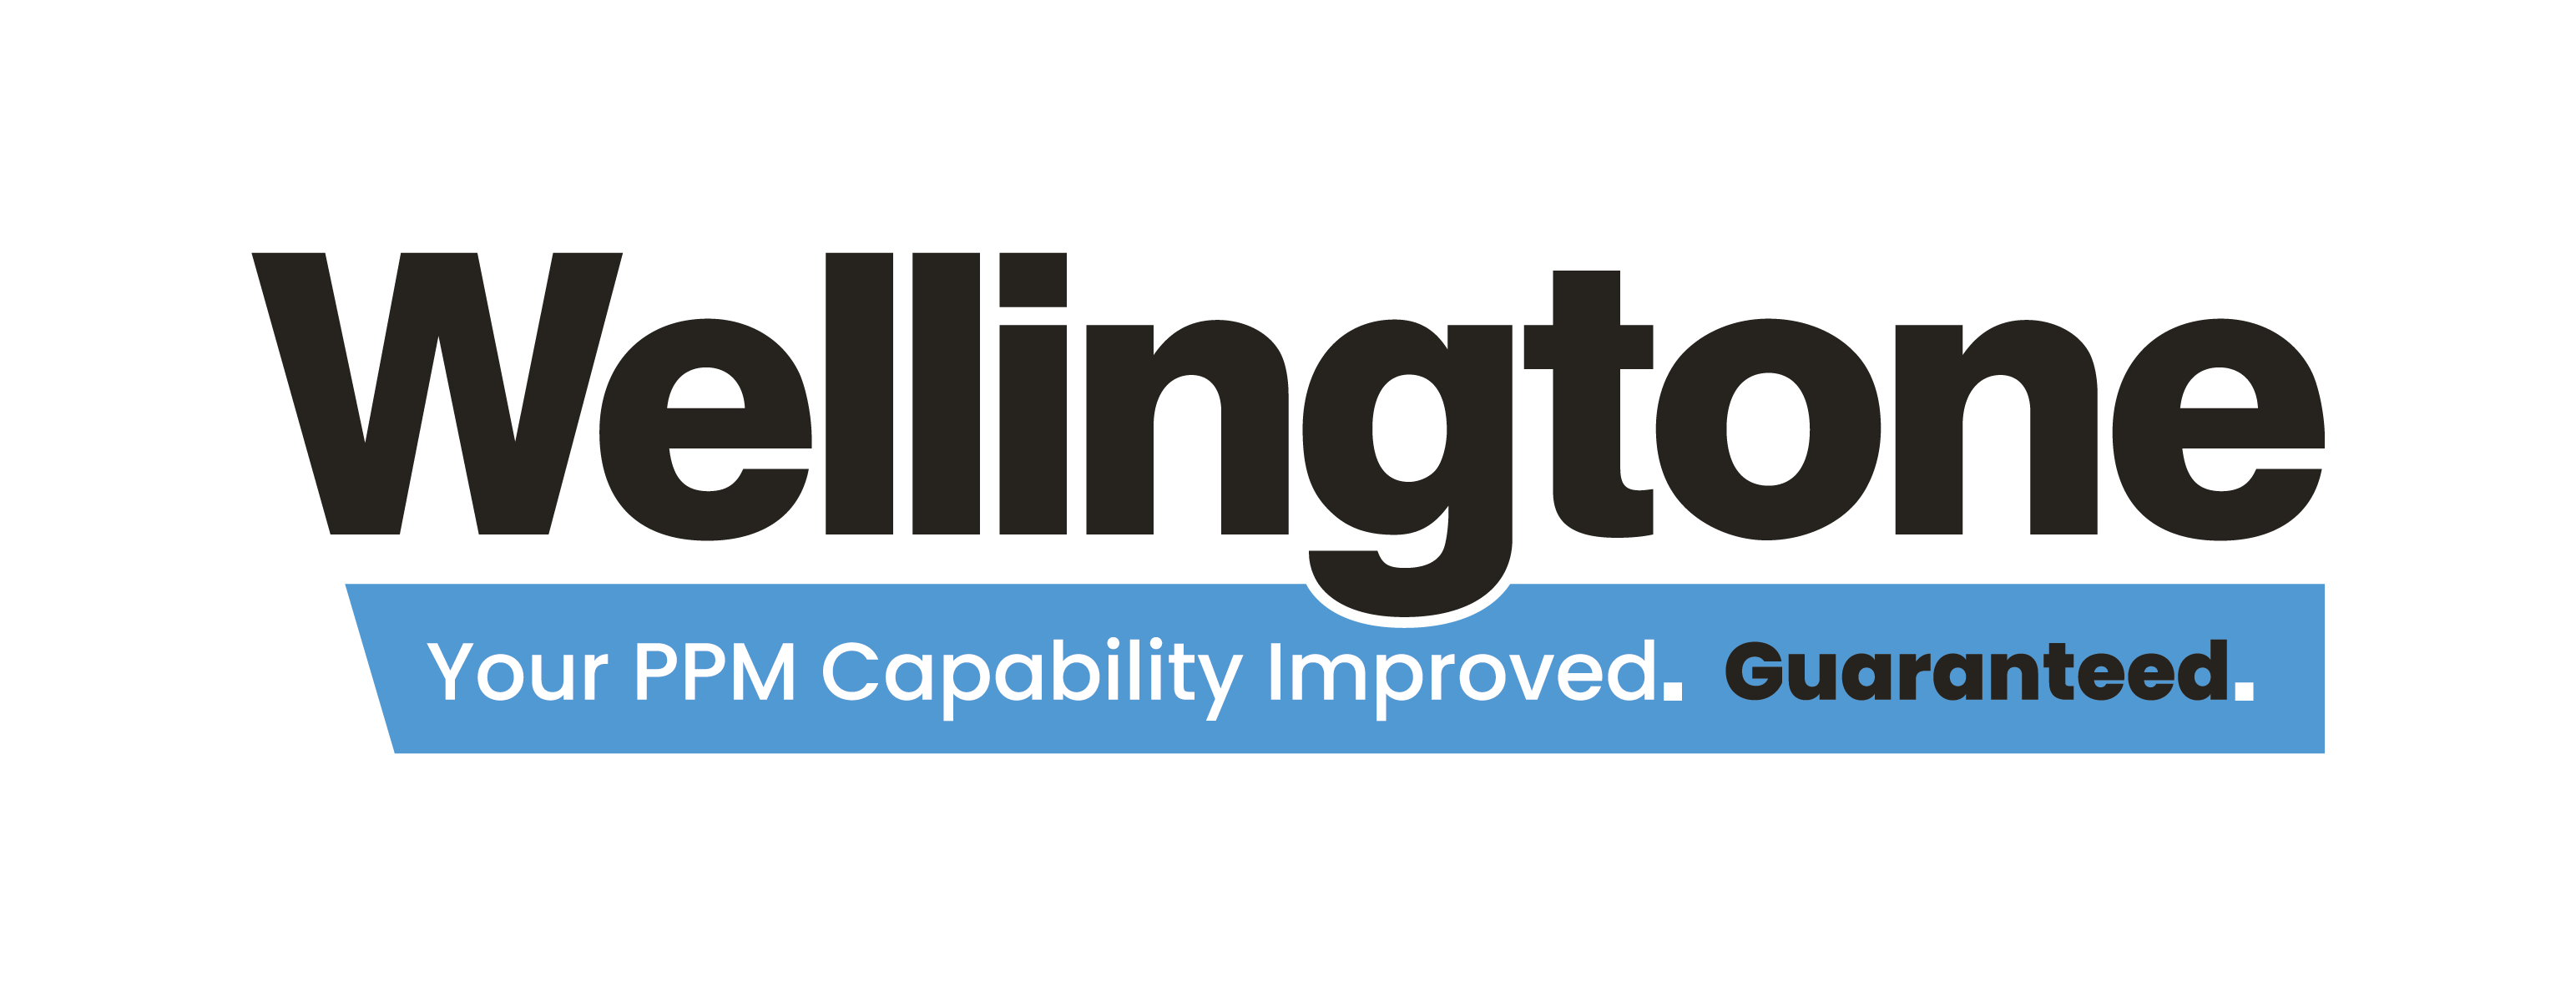 Wellingtone-Logo-Black-Blue-G-Black.png